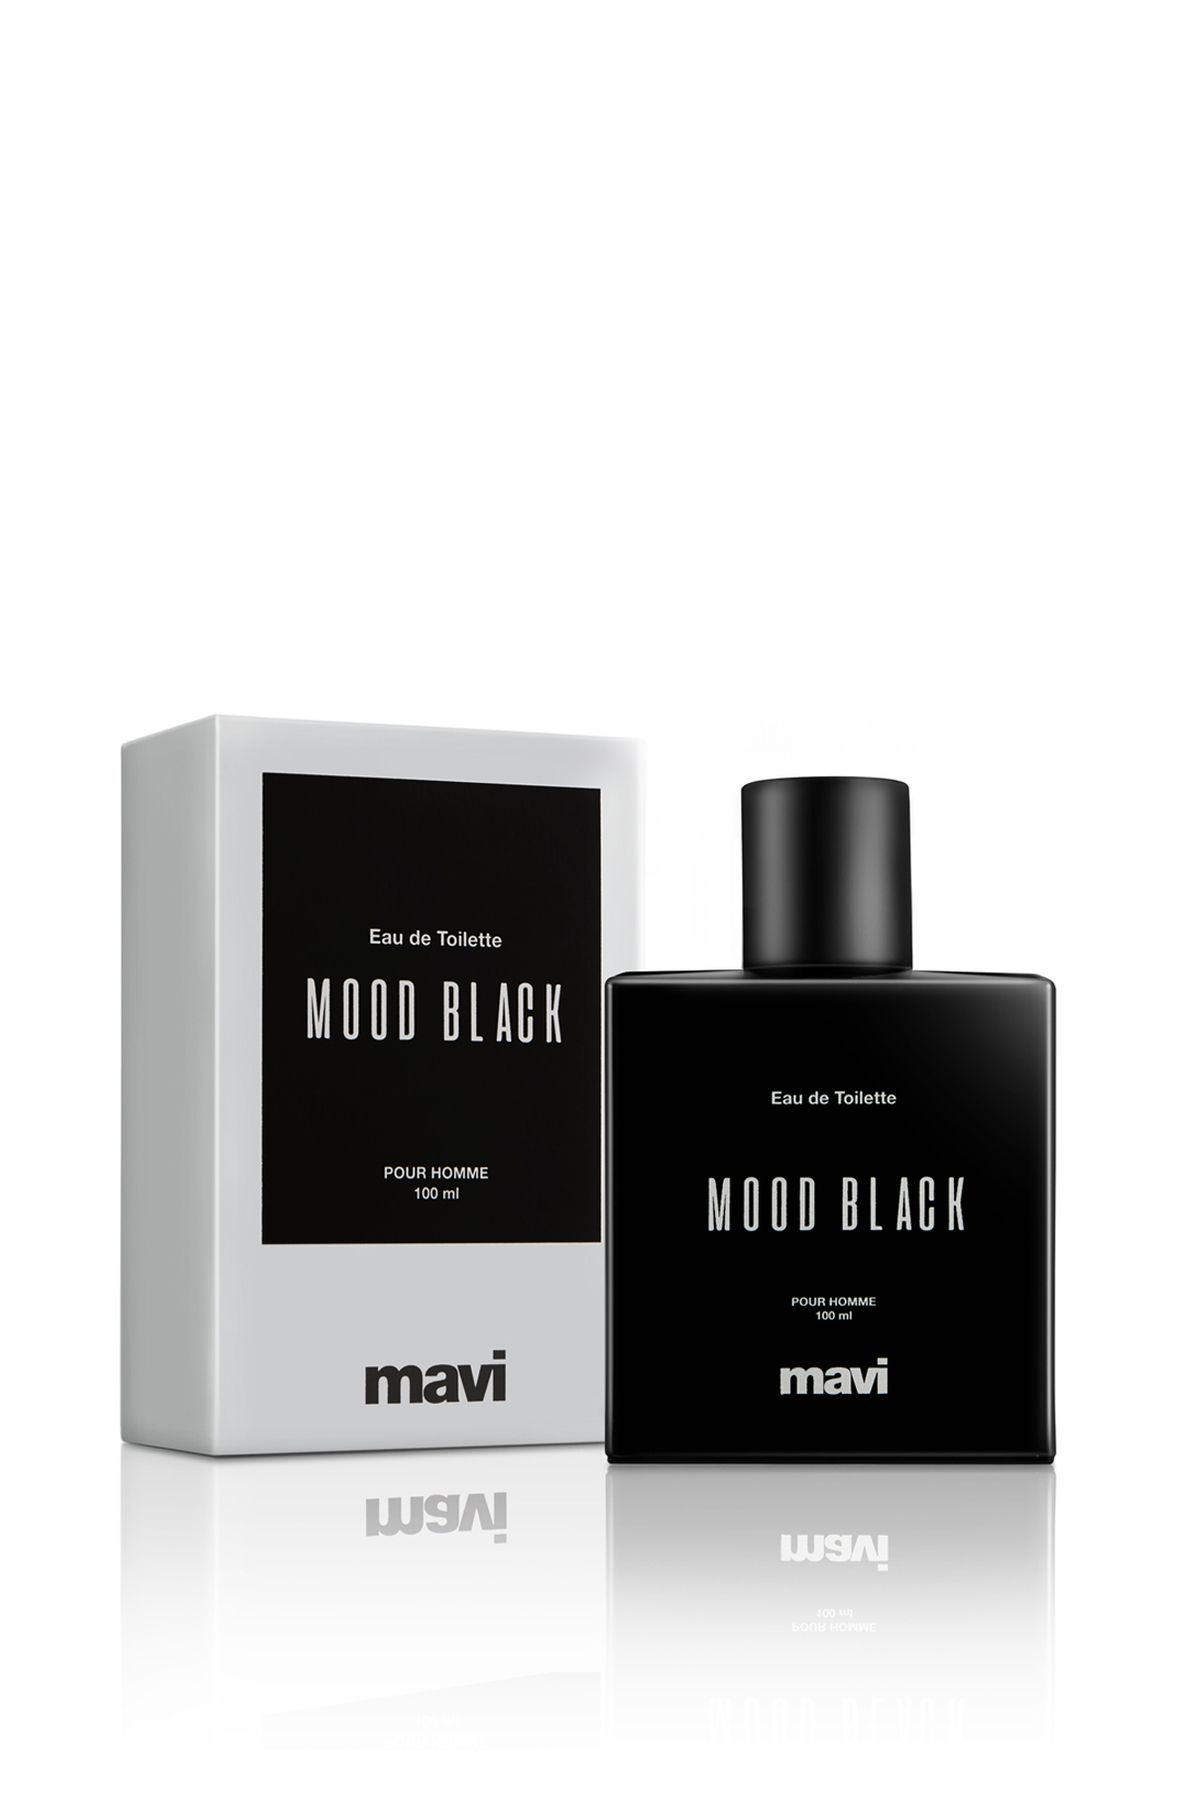 عطر مردانه 100 میل مود بلک ماوی Mood Black Mavi